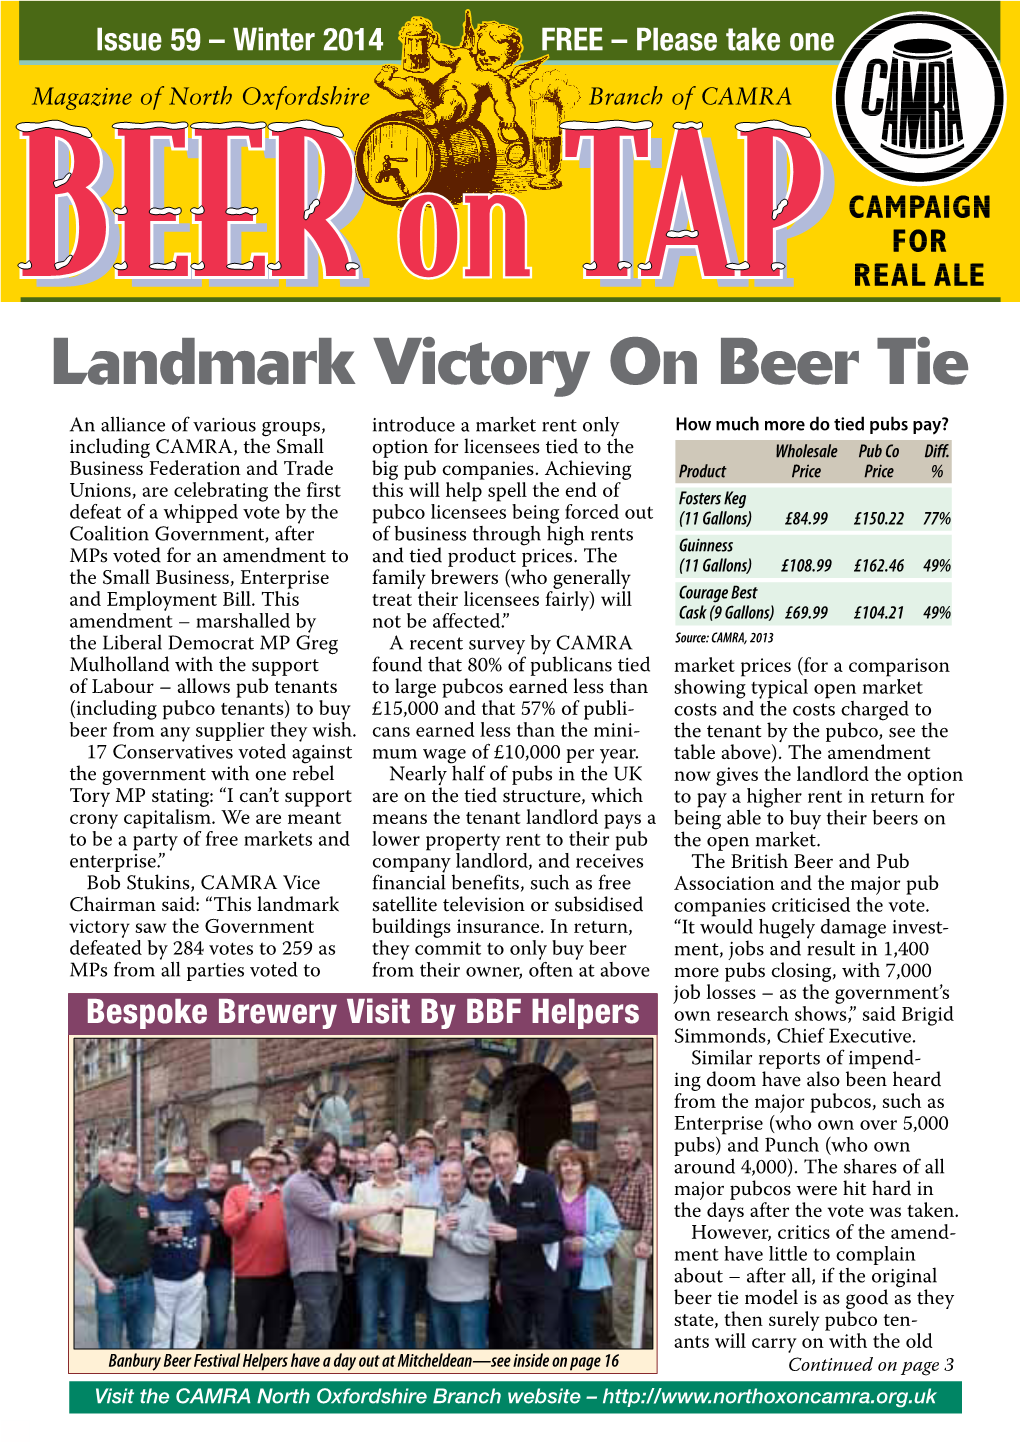 Landmark Victory on Beer Tie